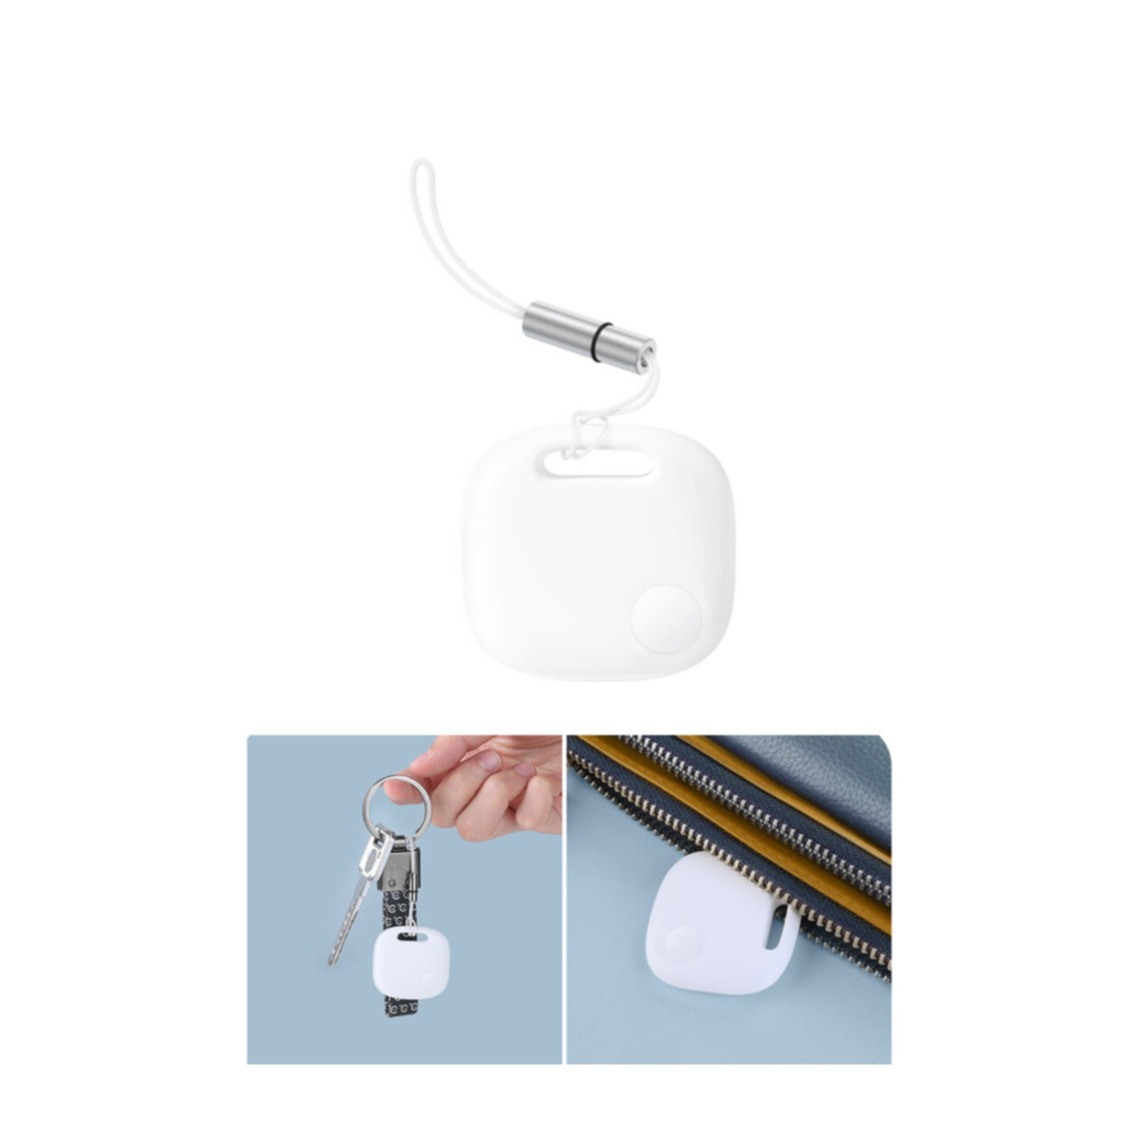 Image of Baseus - T2 Pro Bluetooth Keyfinder Smart Tracker mit Zwei-Wege Alarm für iOS / Android (Batteriebetrieben) + Schlaufe - Weiss bei Apfelkiste.ch